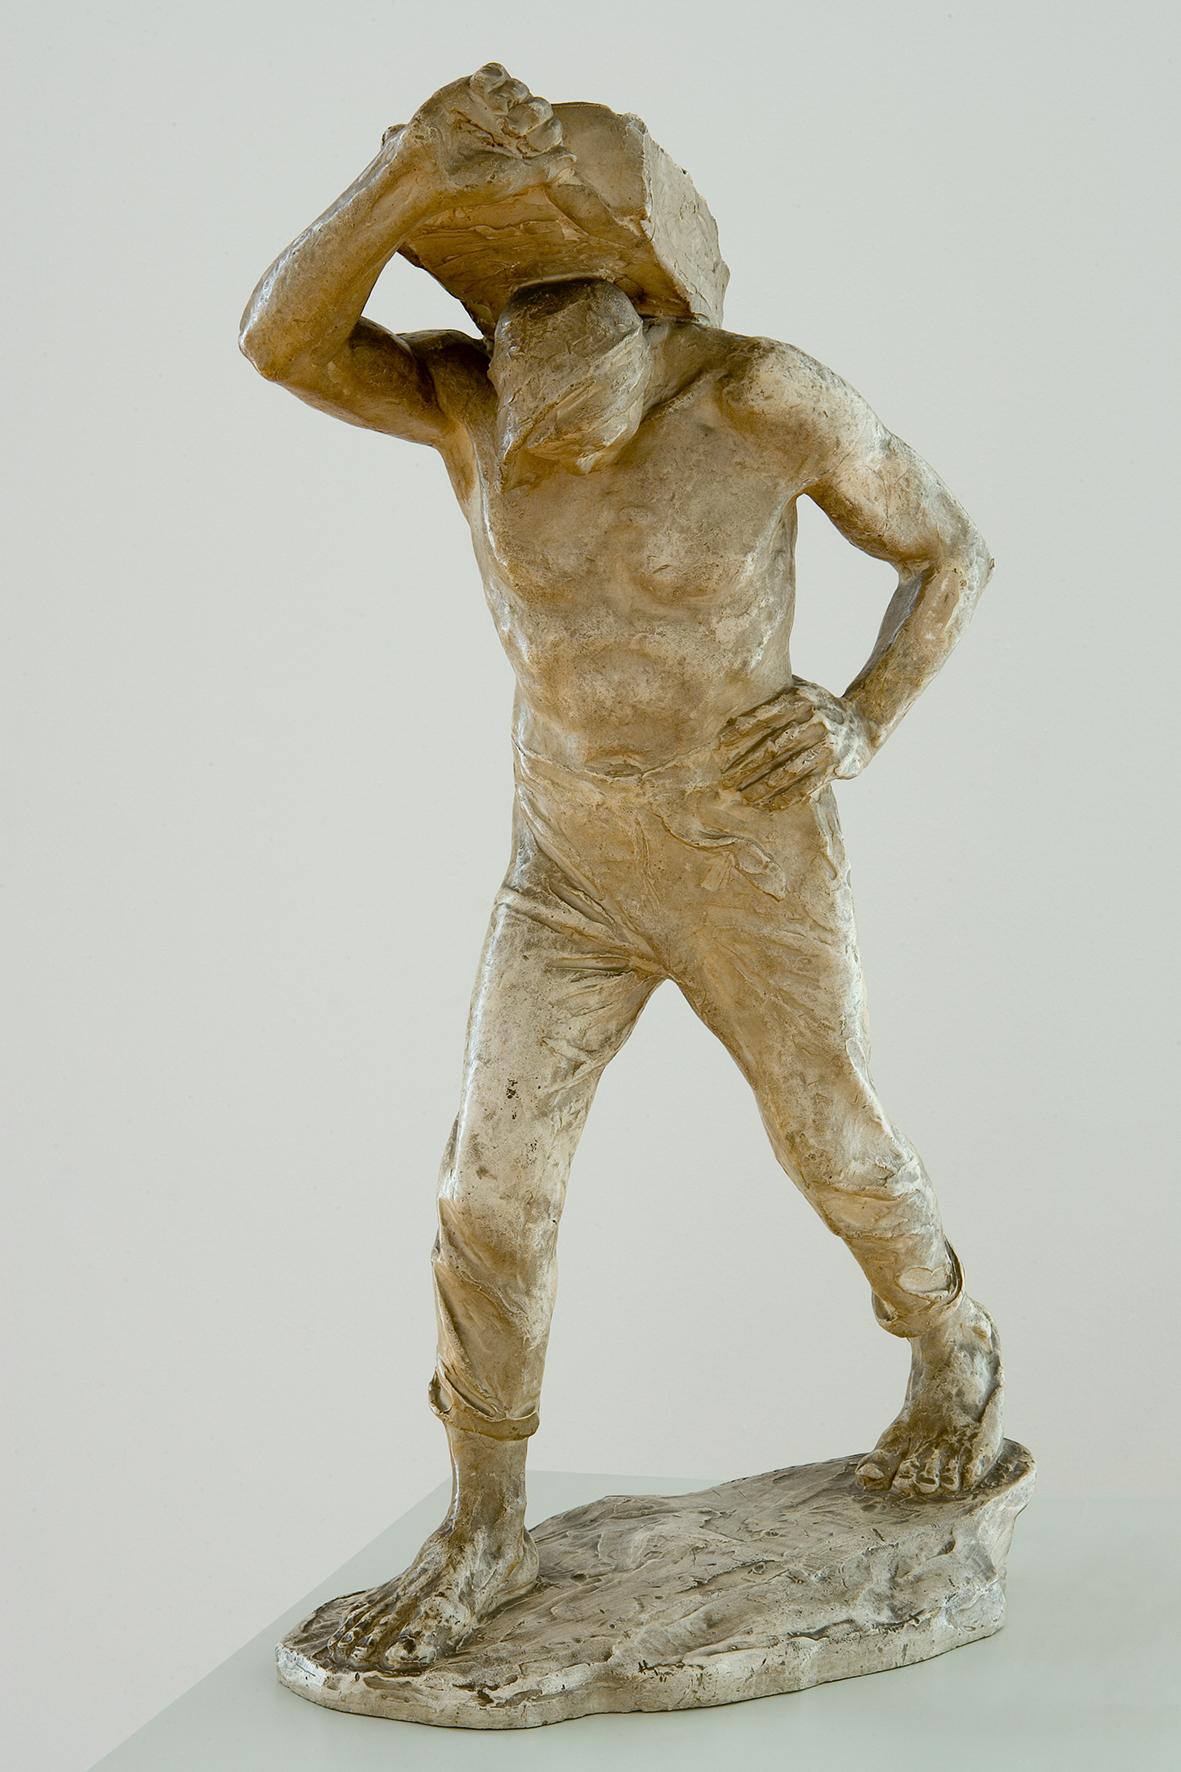 Skulptur Der Lastträger von Constantin Meunier, entstanden um 1889. Die Skulptur stellt einen Mann dar. Der Mann geht und trägt etwas auf seinen Schultern.